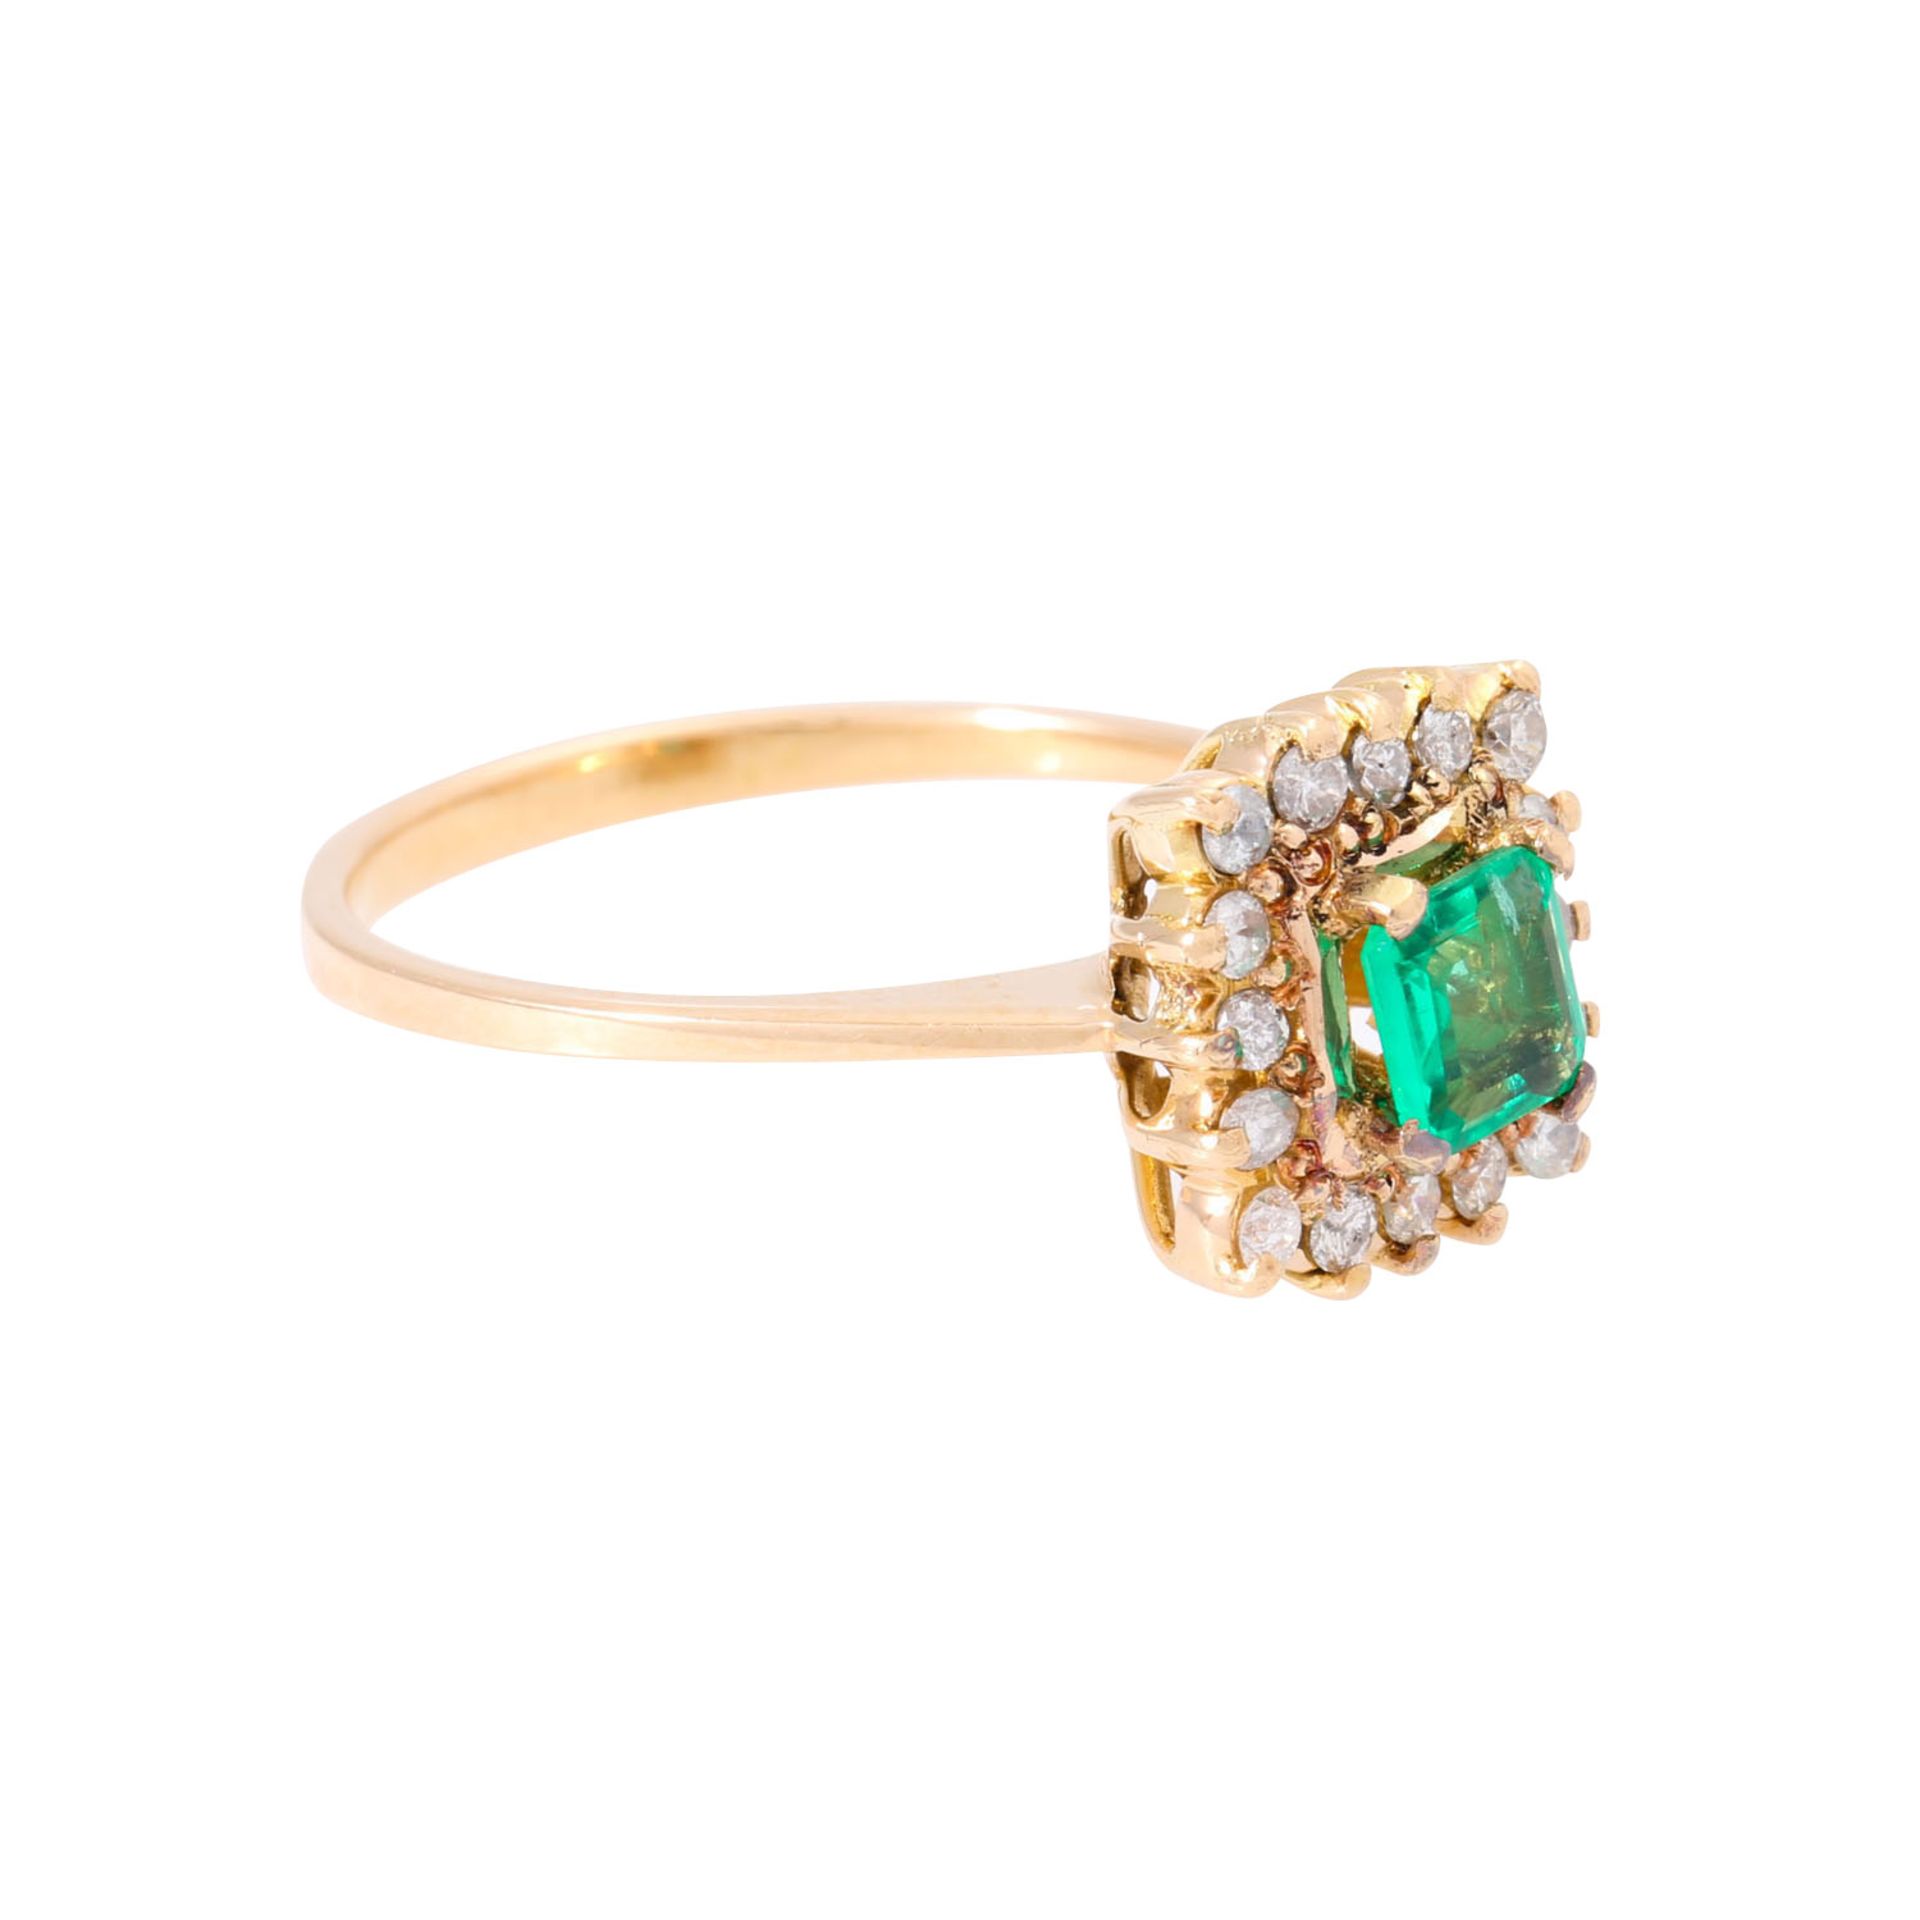 Zierlicher Ring mit Smaragd ca. 0,25 ct umrandet von 16 Brillanten